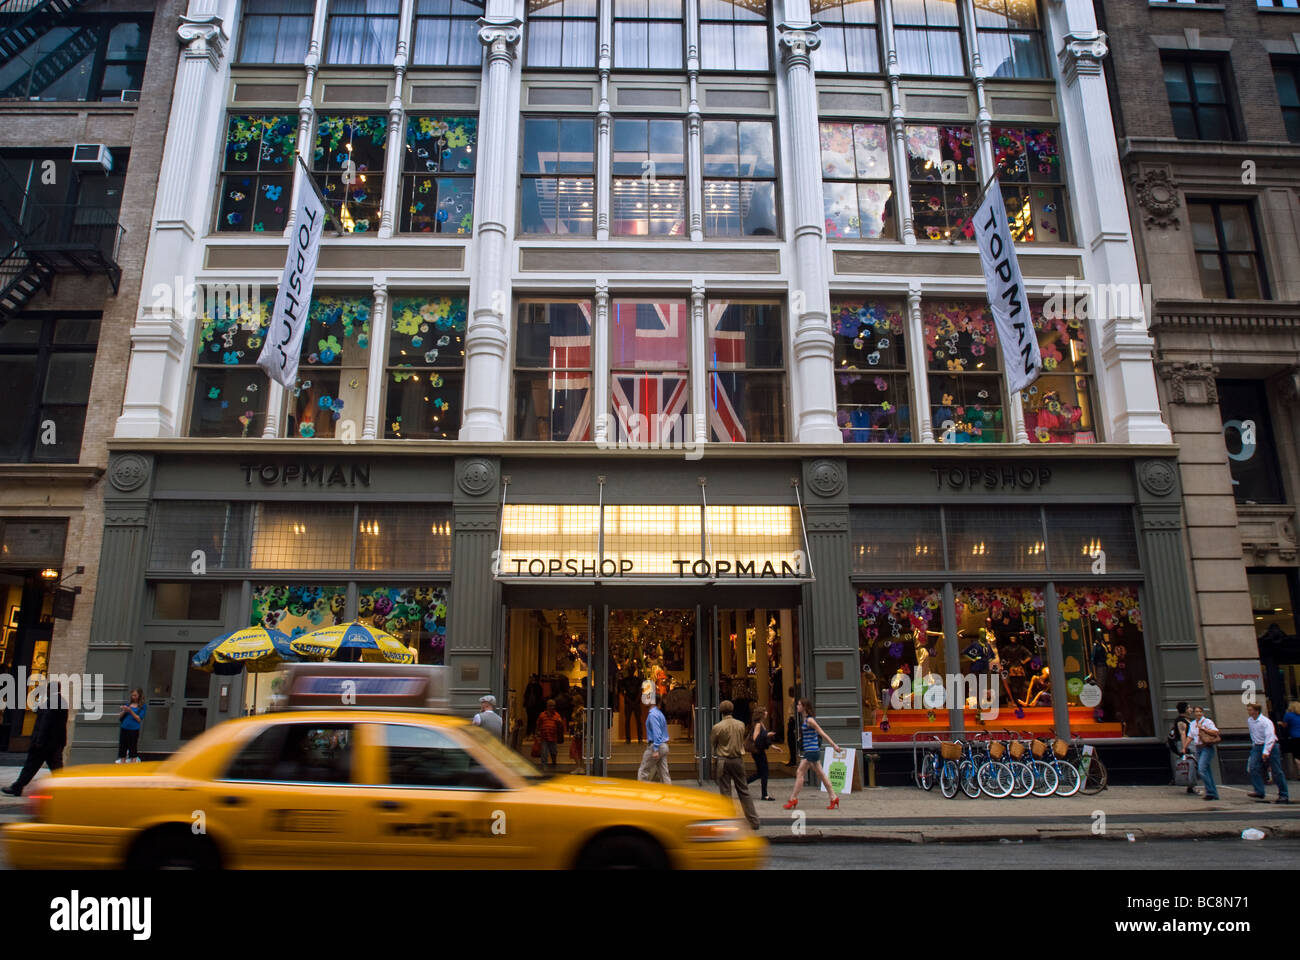 Im Topshop Store in der Nähe von Soho in New York Stockfotografie - Alamy